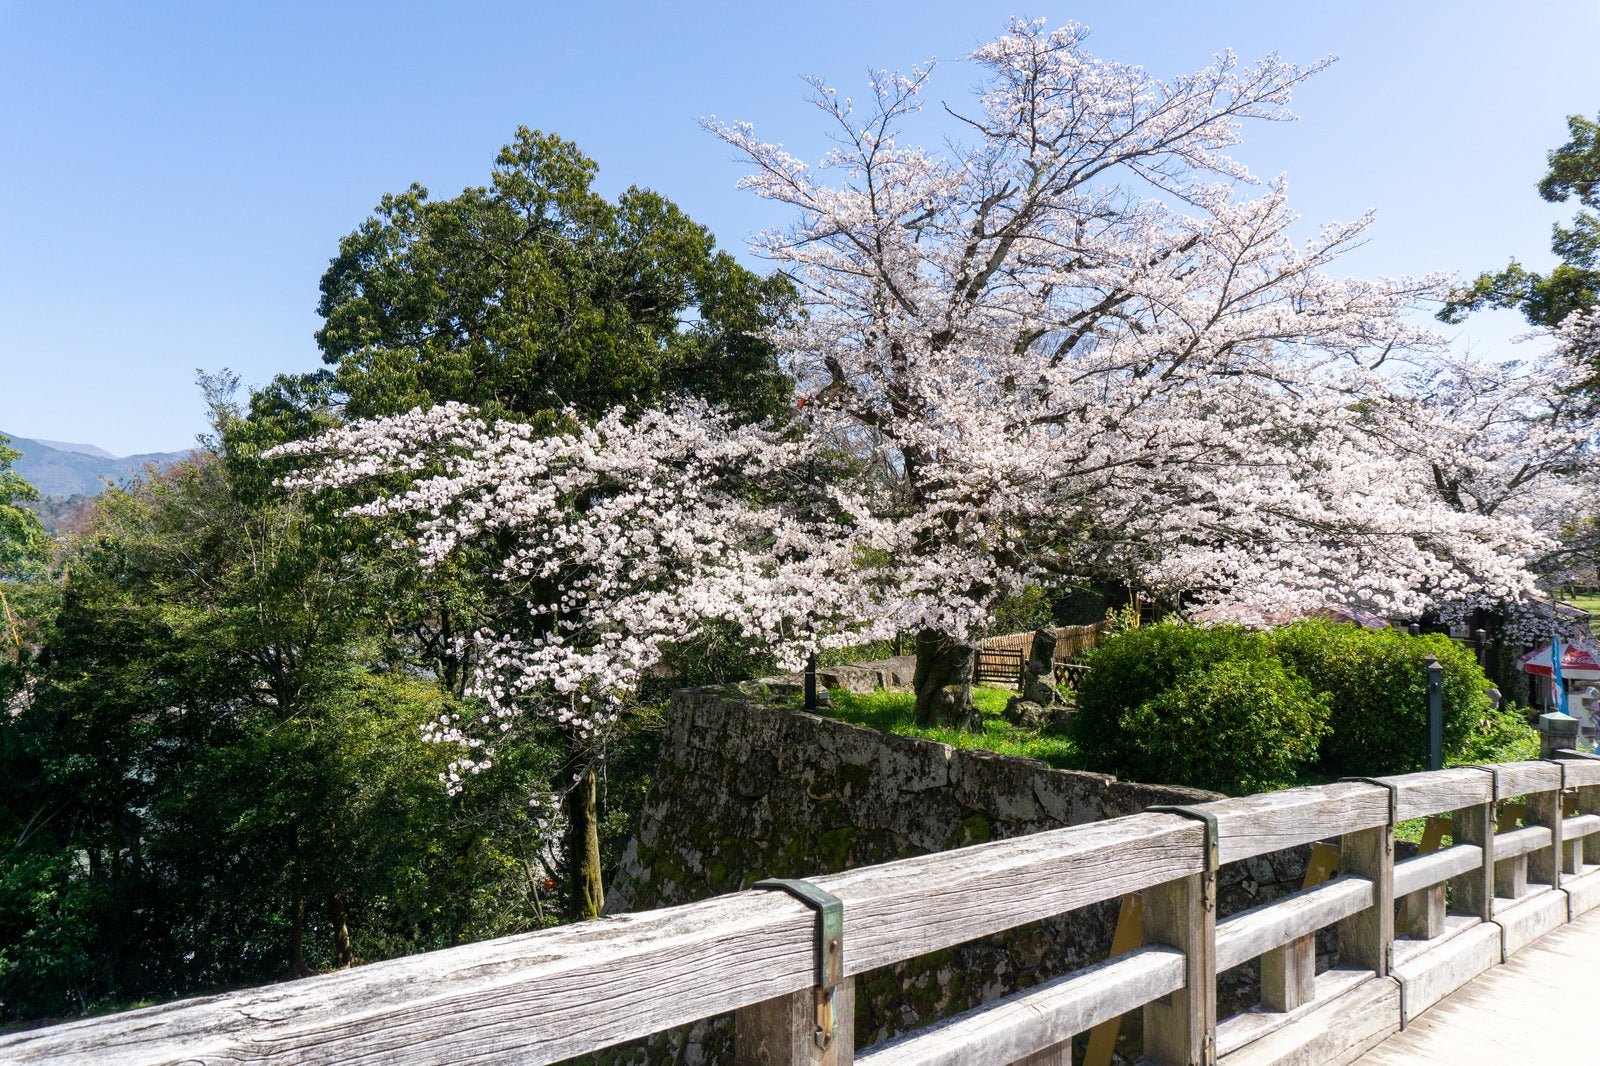 「彦根城廊下橋から見る鐘の丸石垣上に咲く桜」の写真